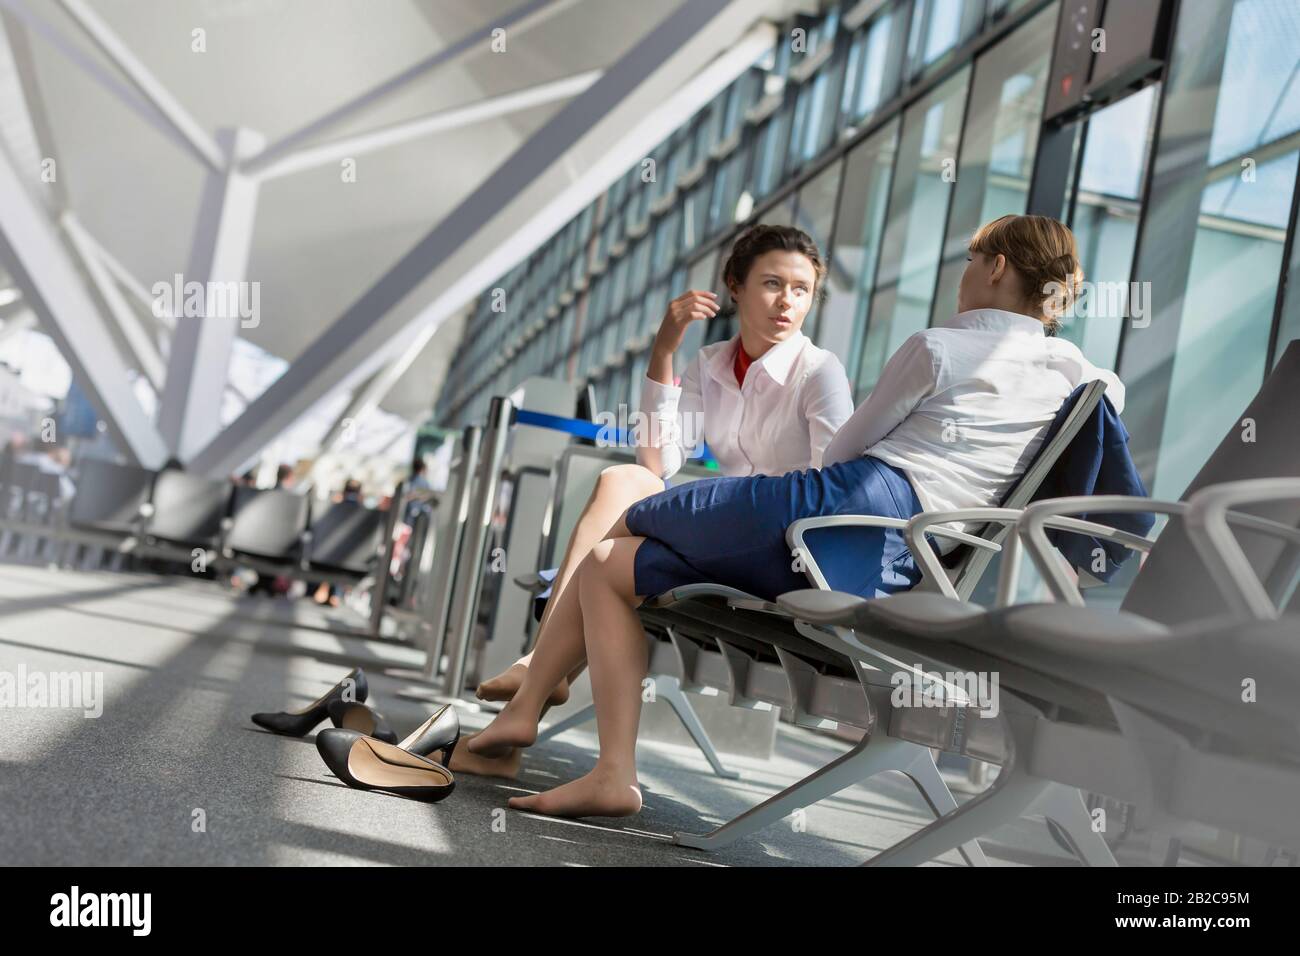 El personal del aeropuerto es joven y atractivo y está sentado mientras habla durante un descanso en el aeropuerto Foto de stock